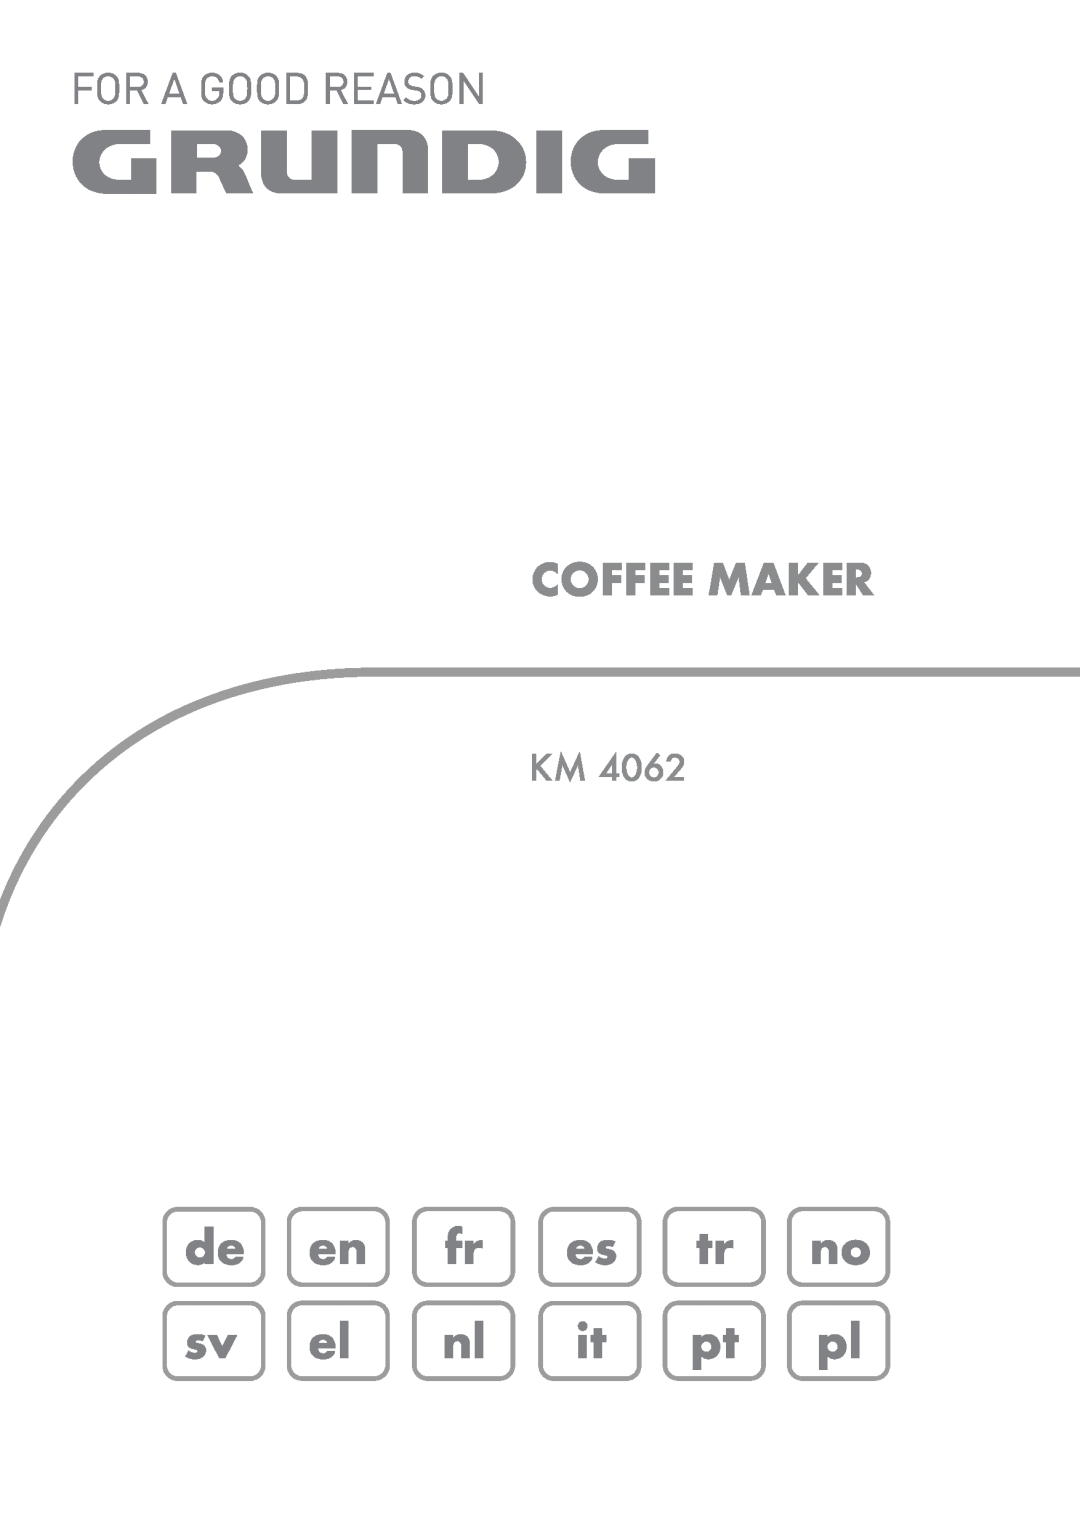 Grundig KM4062 manual de en fr es tr no sv el nl it pt pl, Coffee Maker 